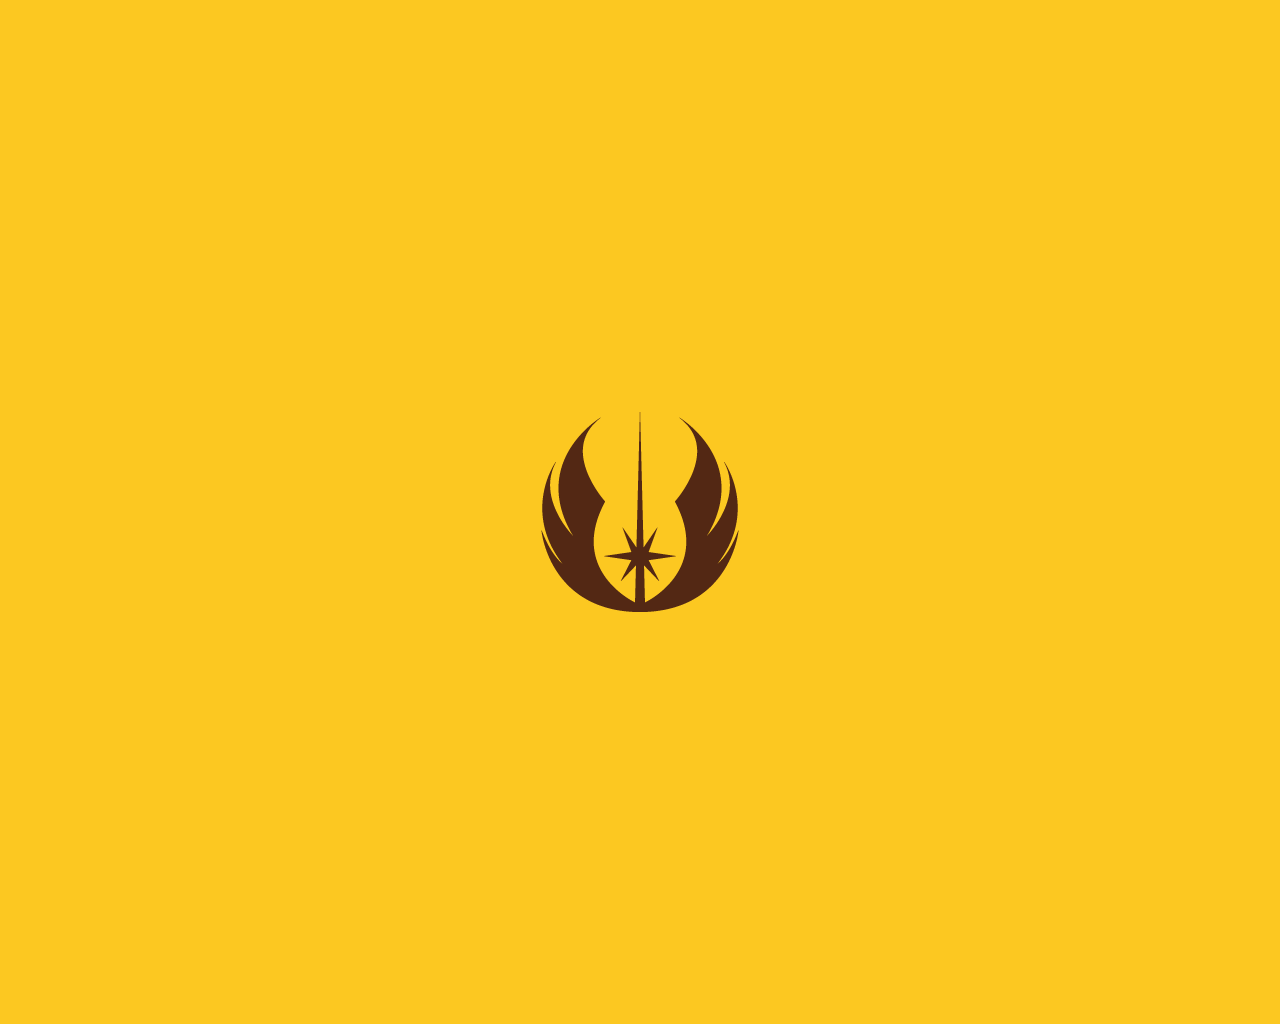 Minimalist Star Wars wallpaper: Jedi Emblem